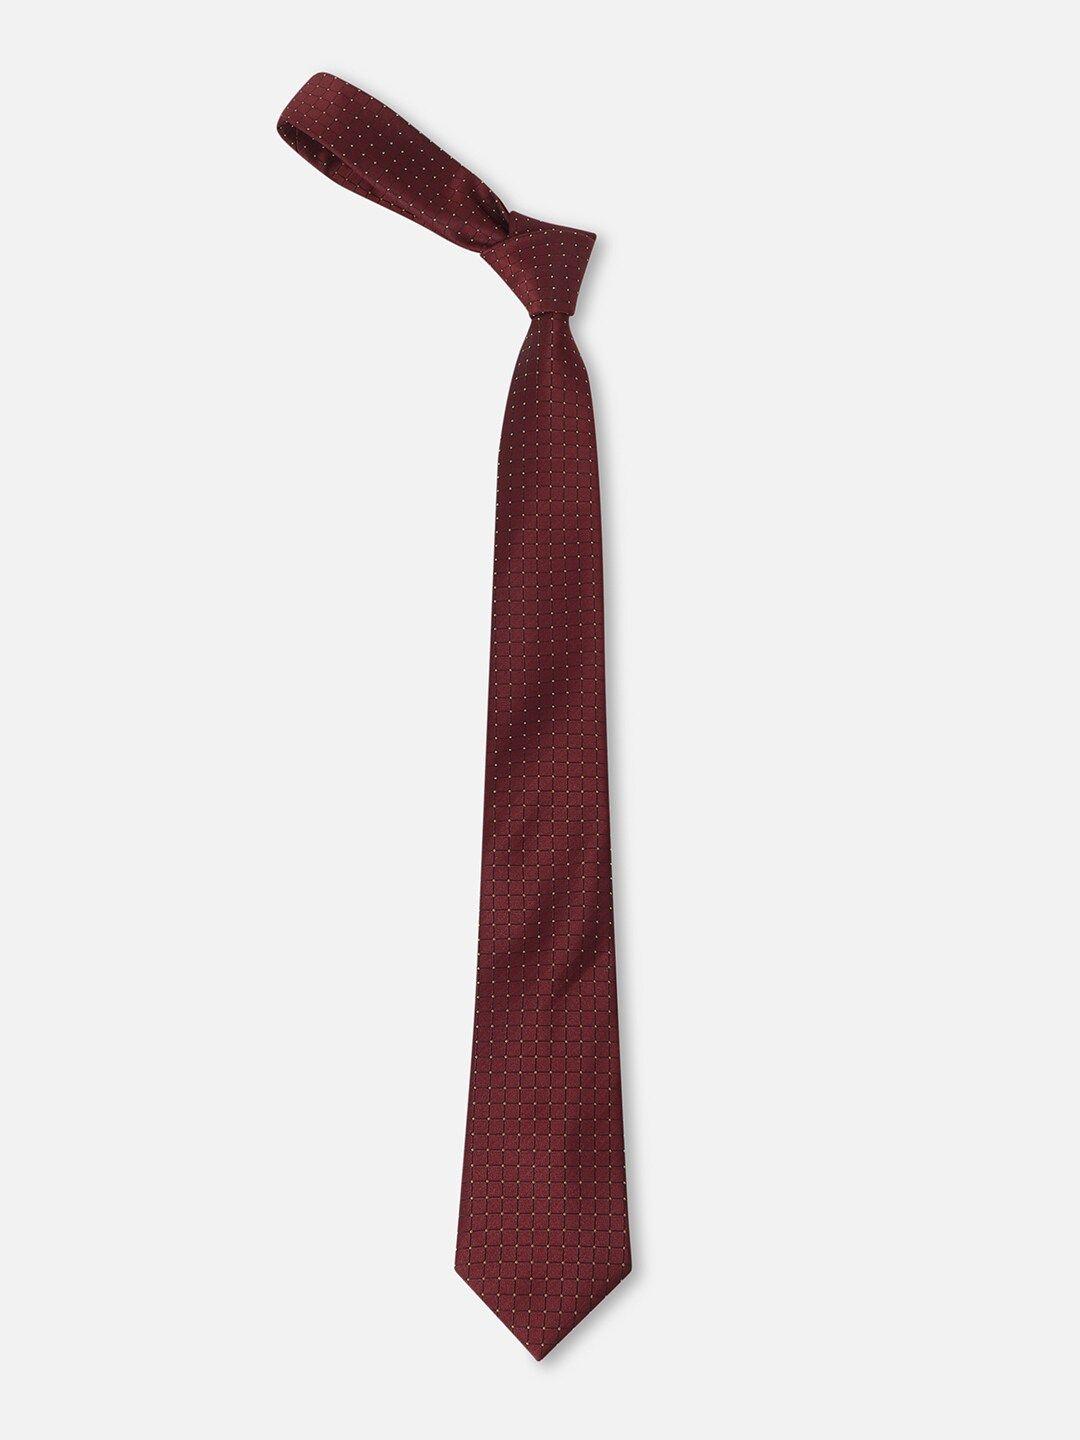 allen solly men printed formal tie